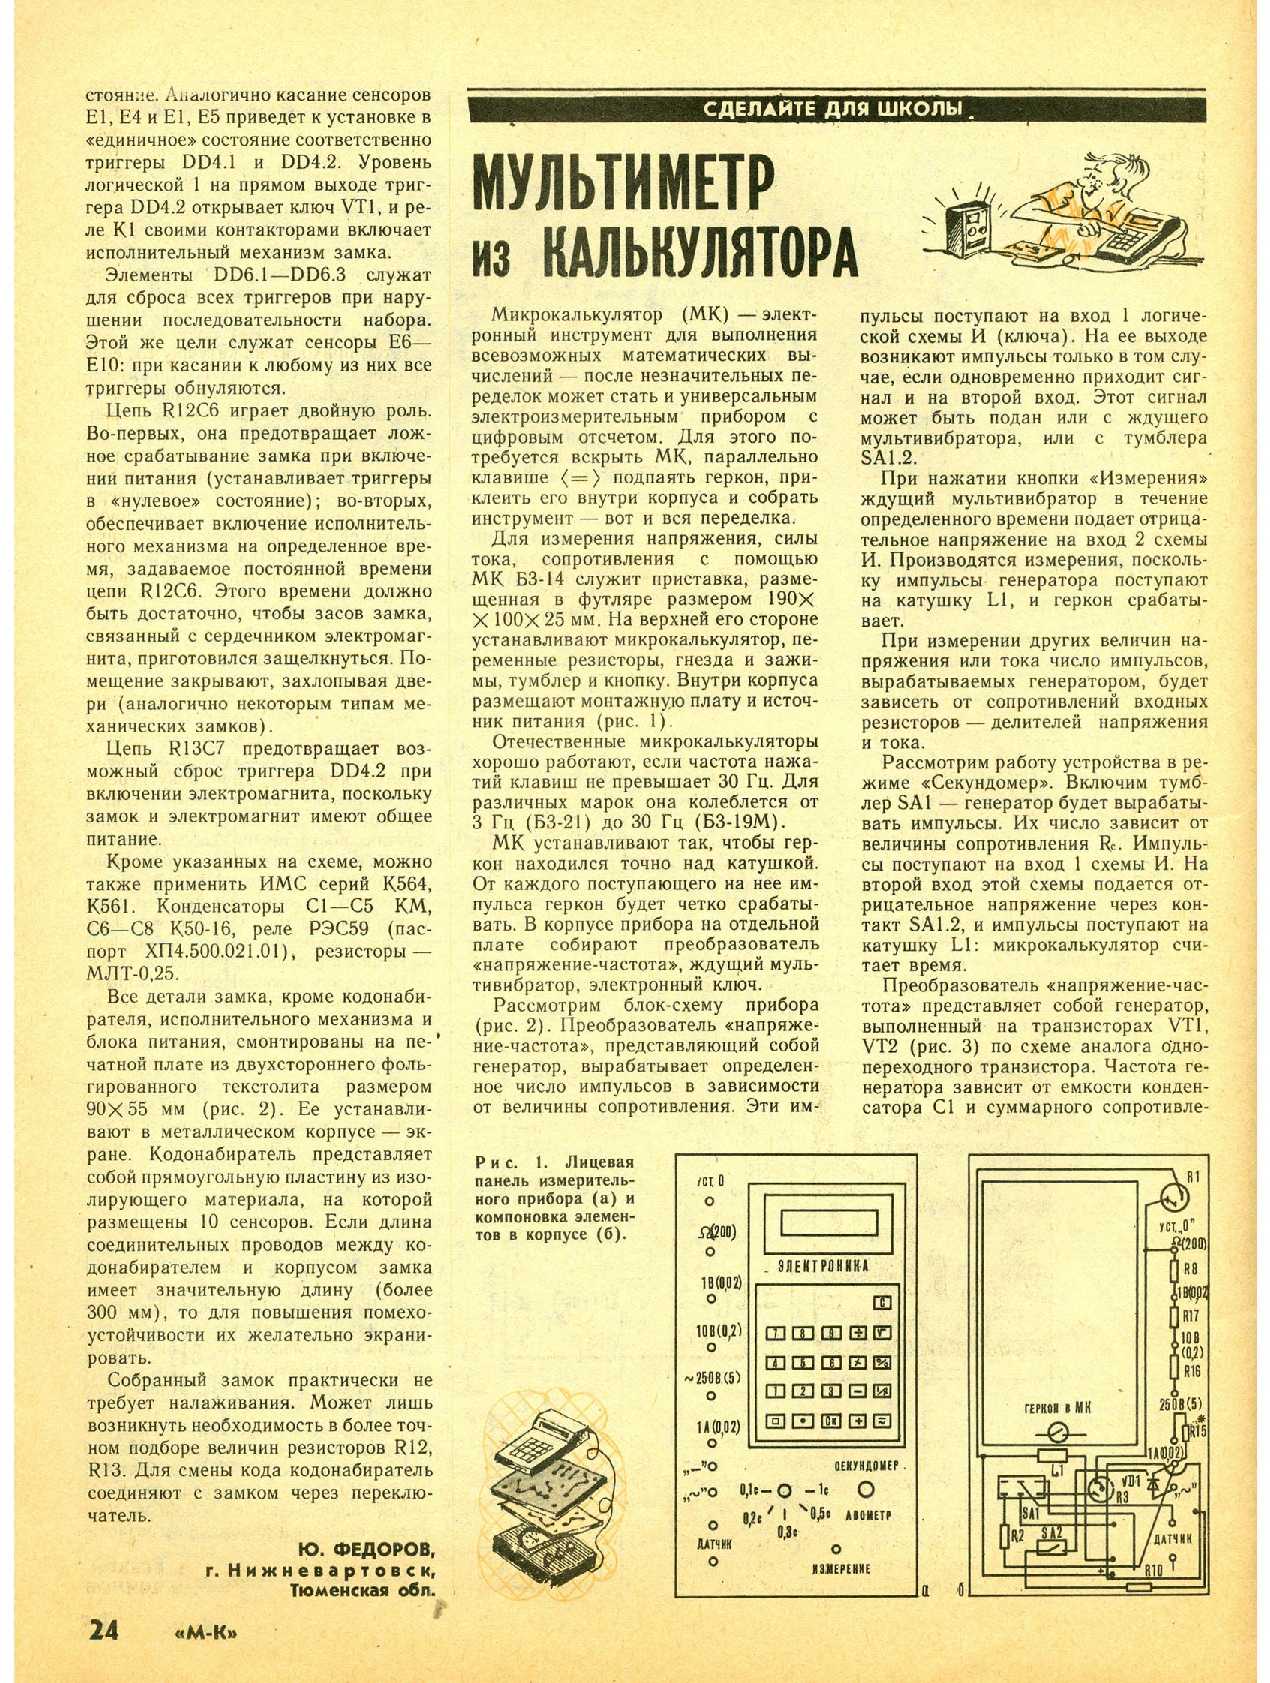 МК 3-4, 1992, 24 c.